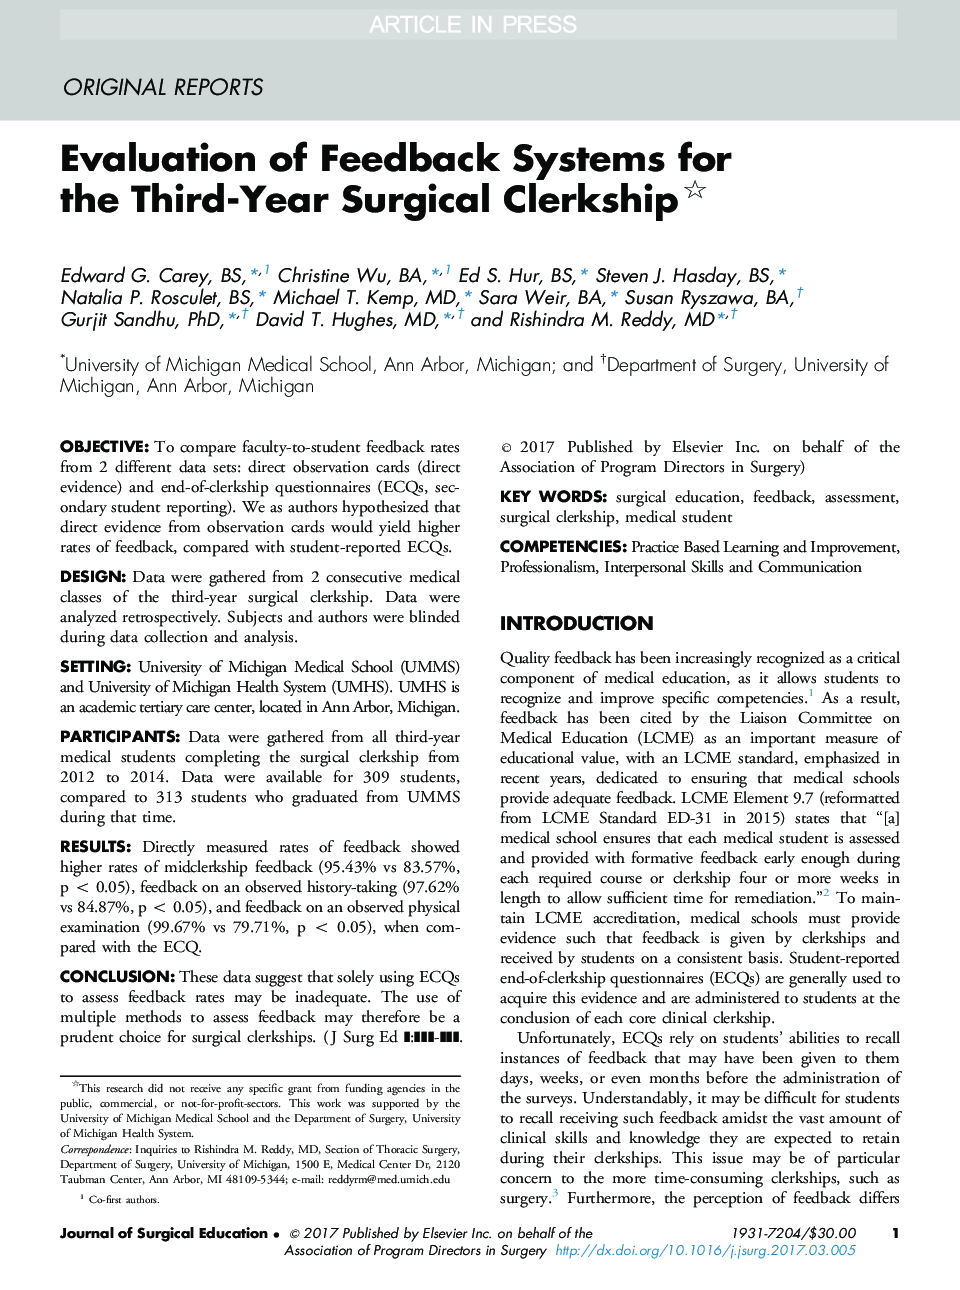 ارزیابی سیستم های بازخورد برای کارآموزی جراحی سال سوم 